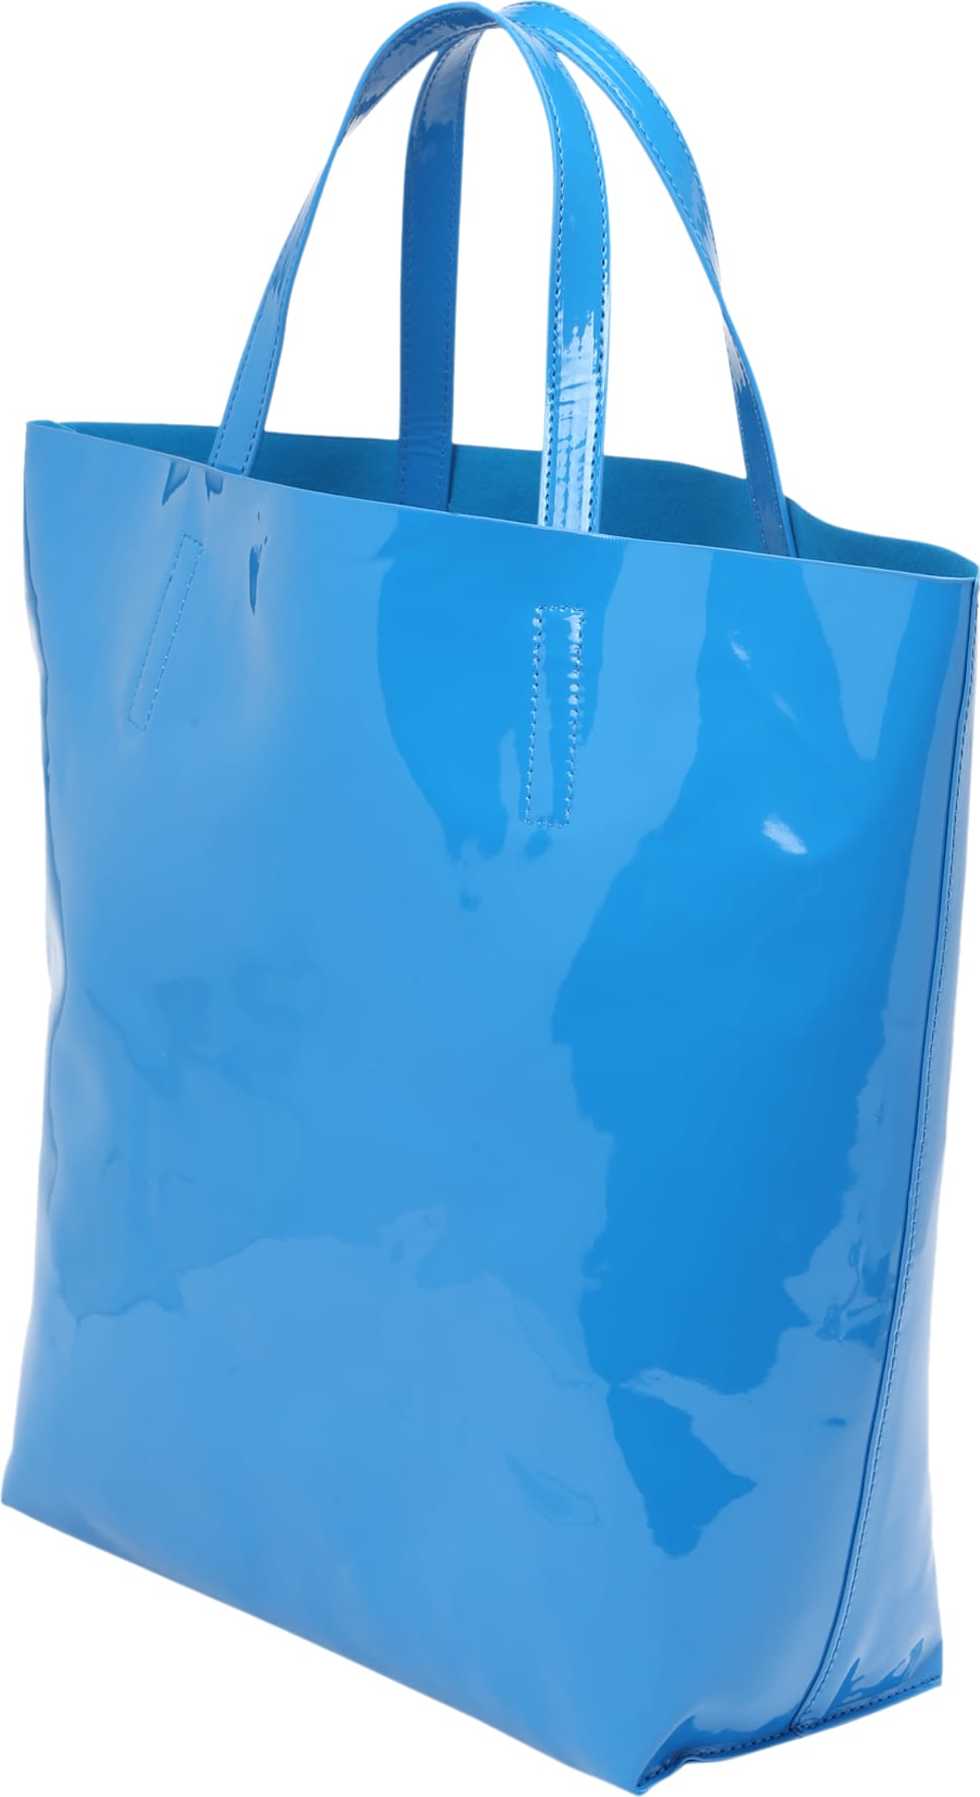 Gina Tricot Nákupní taška 'Zia' nebeská modř